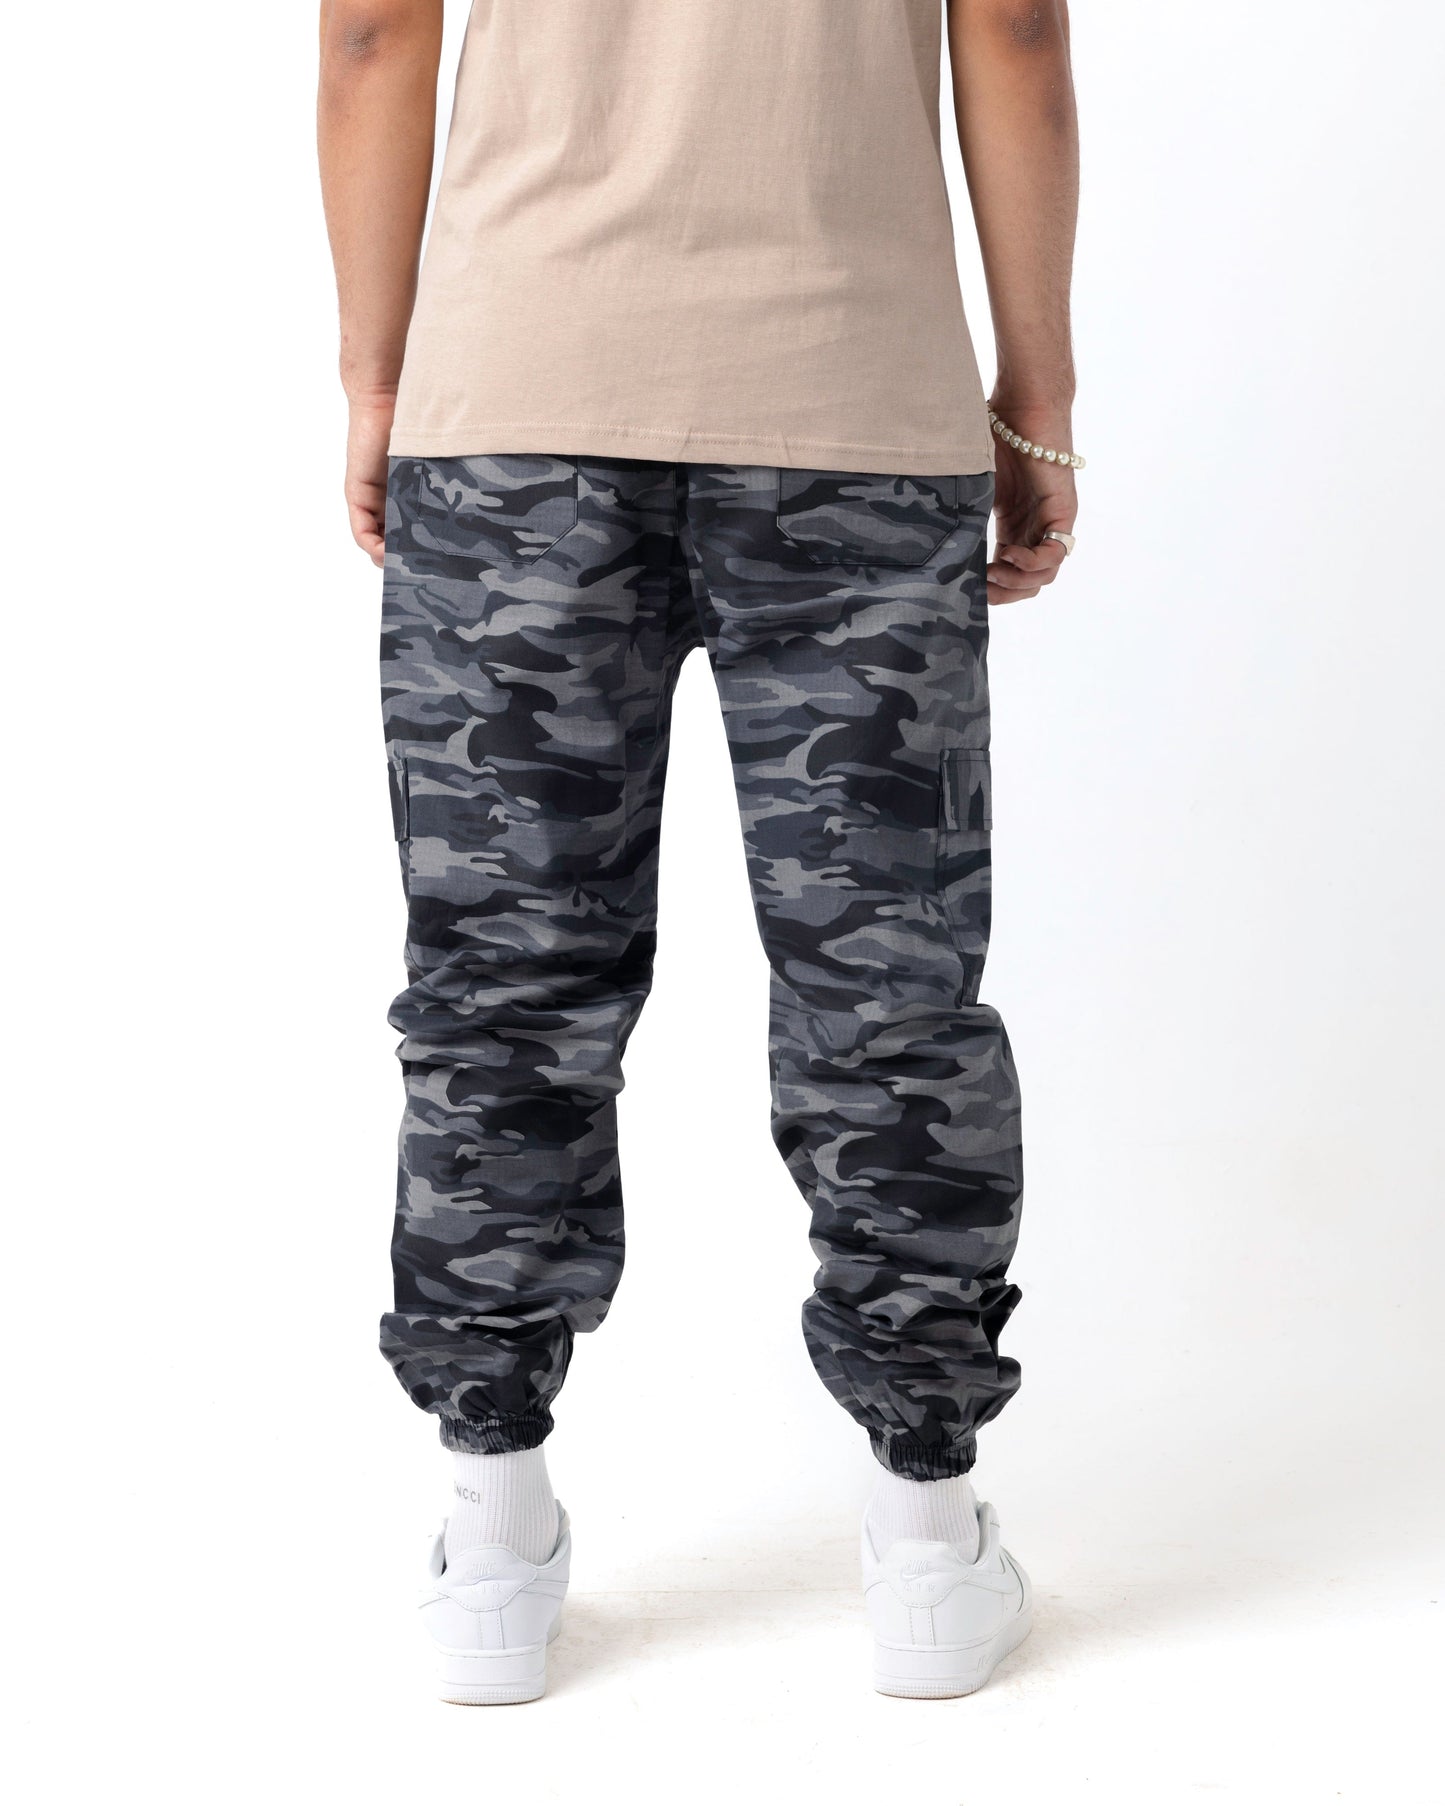 Jogger grey army pants – Novencci